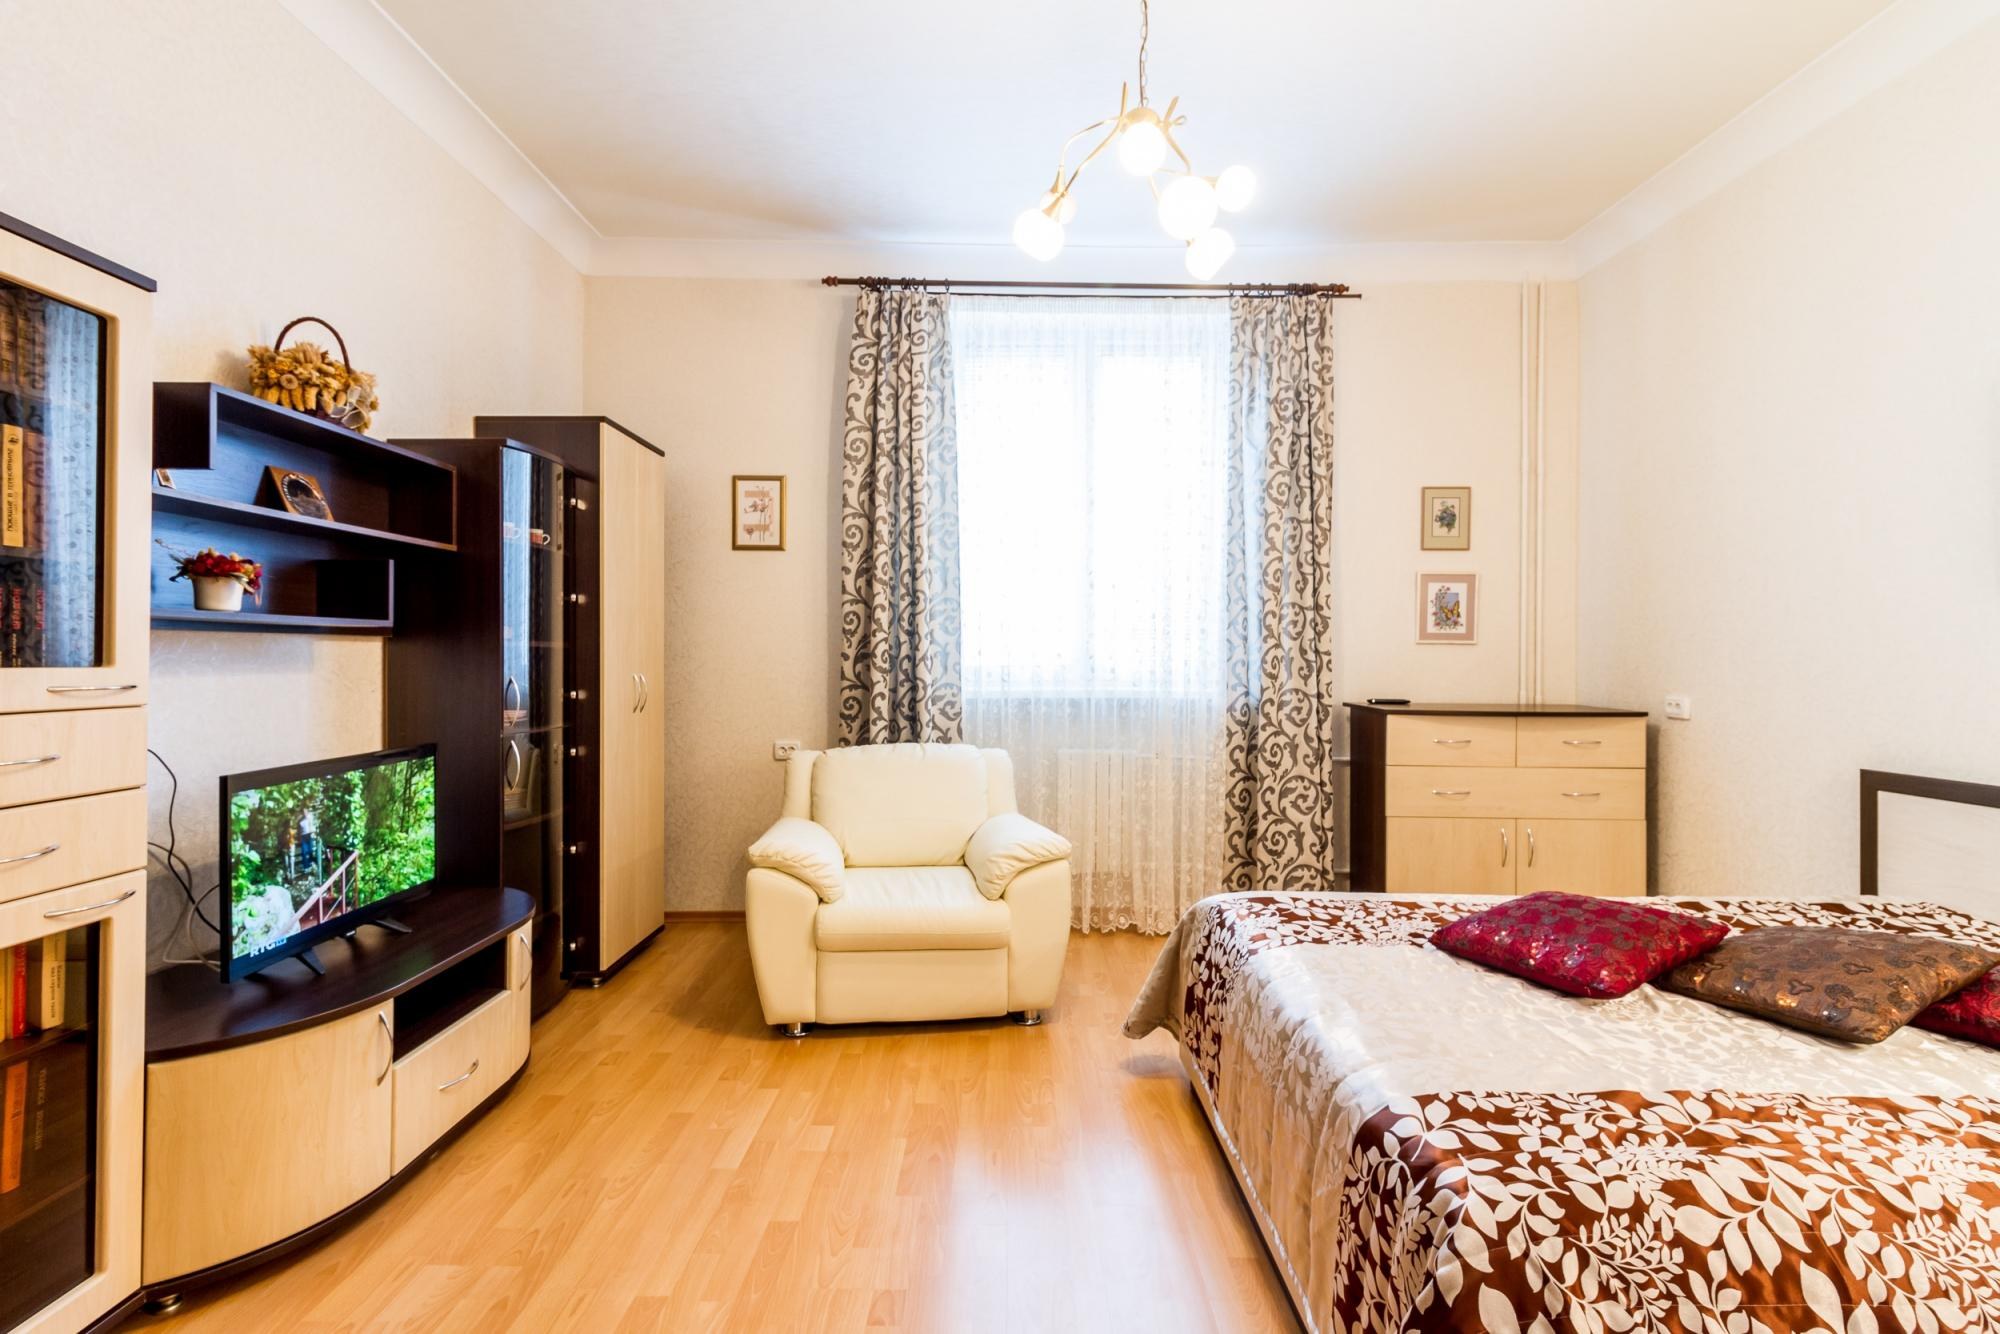 Снять квартиру в москве на 2 месяца. Комната обычная. Квартира обычная. Комната в квартире обычная. Красивая квартира.